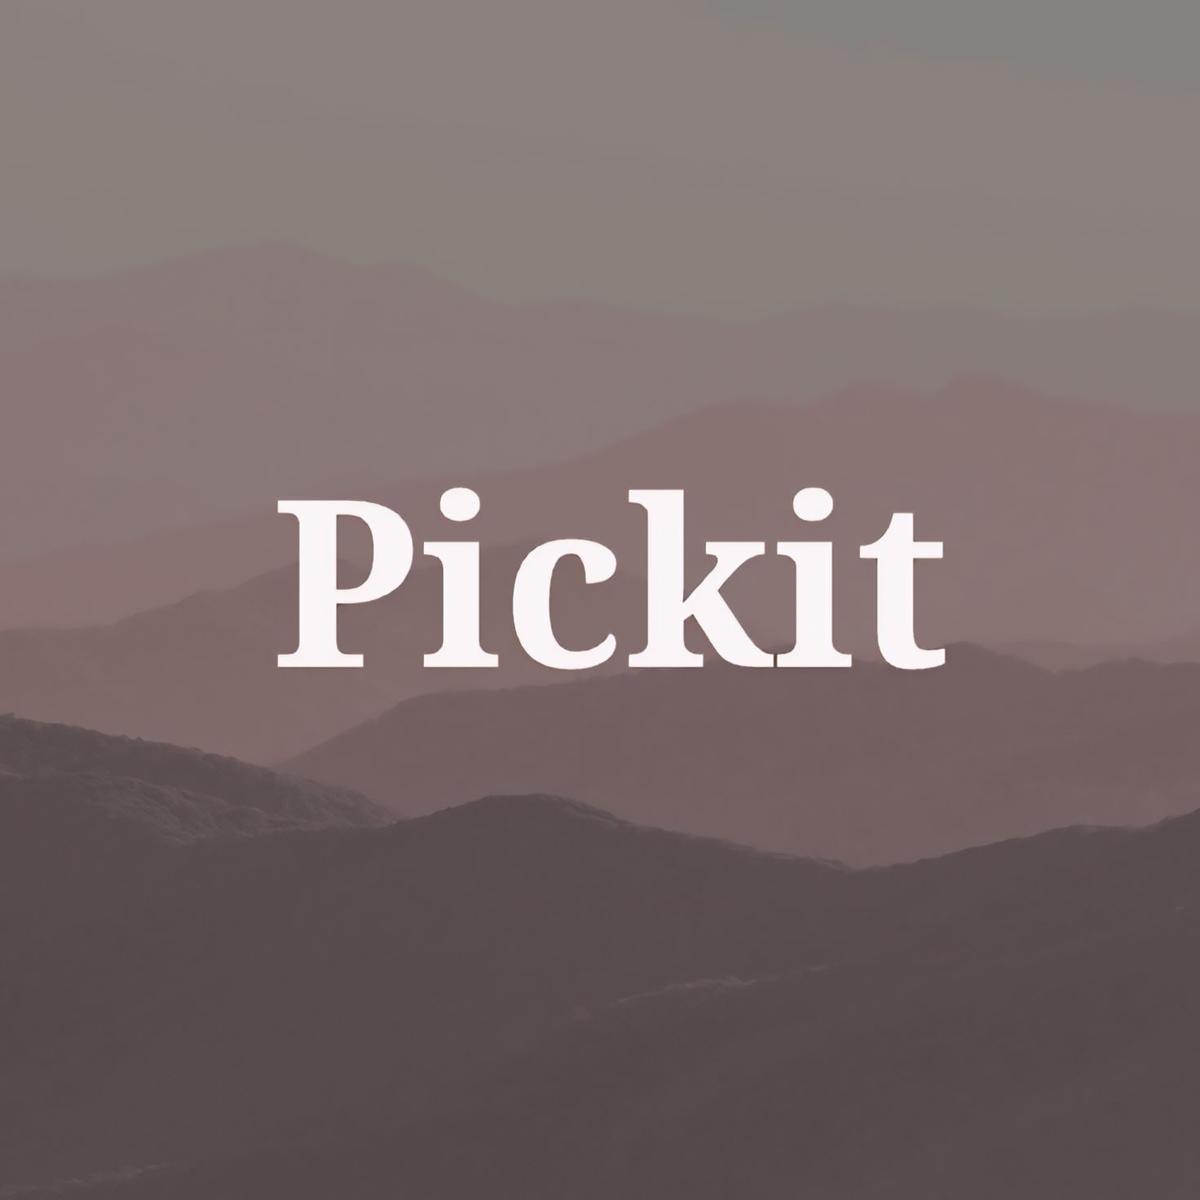 Pickit